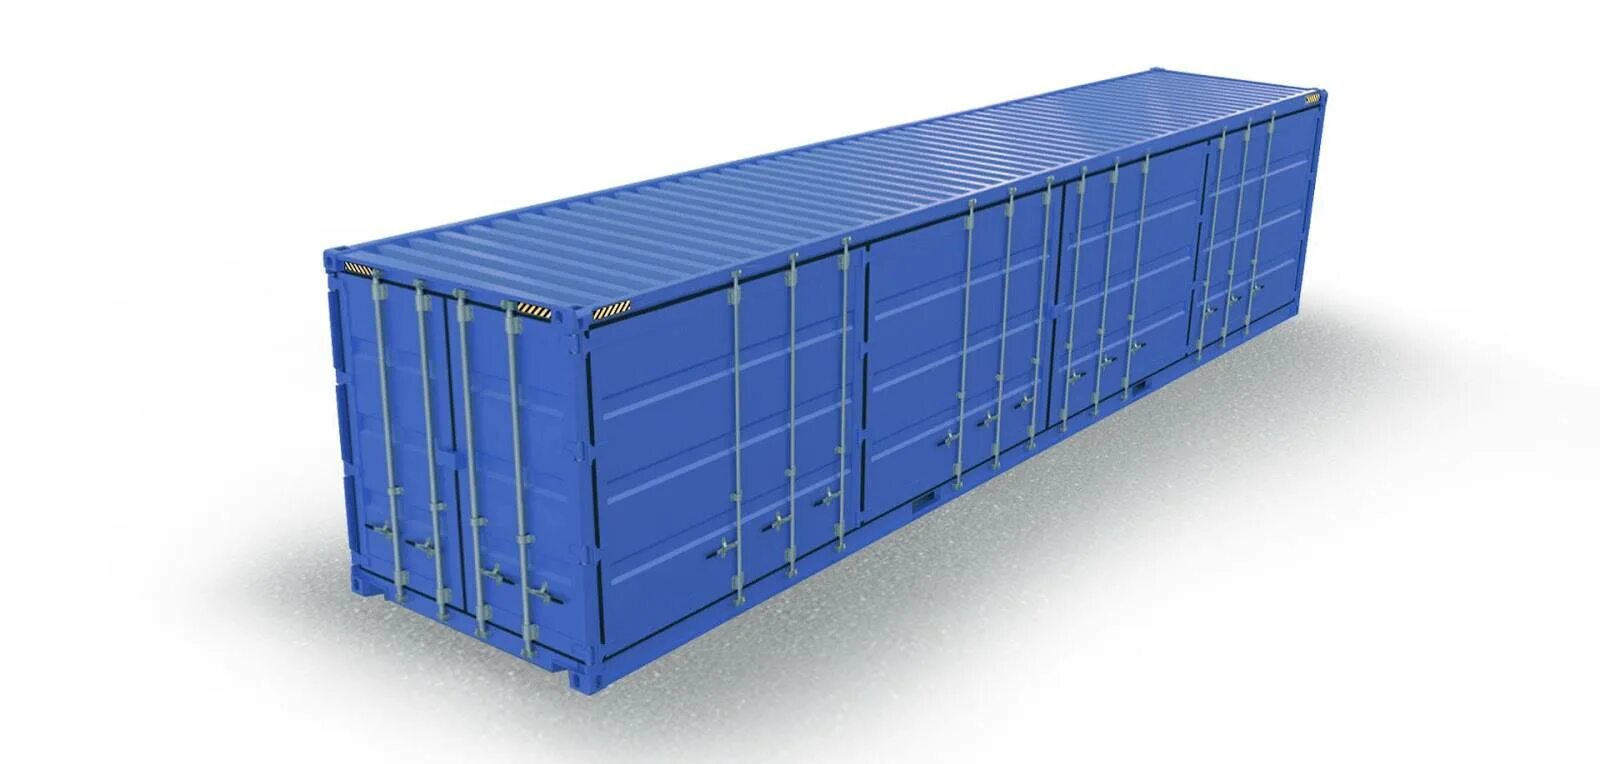 45 ФТ контейнер. 45 Футовый прицеп грузовой. 20-Футовый стандартный (Dry Cube) контейнер. DFDS контейнер 45 футов.